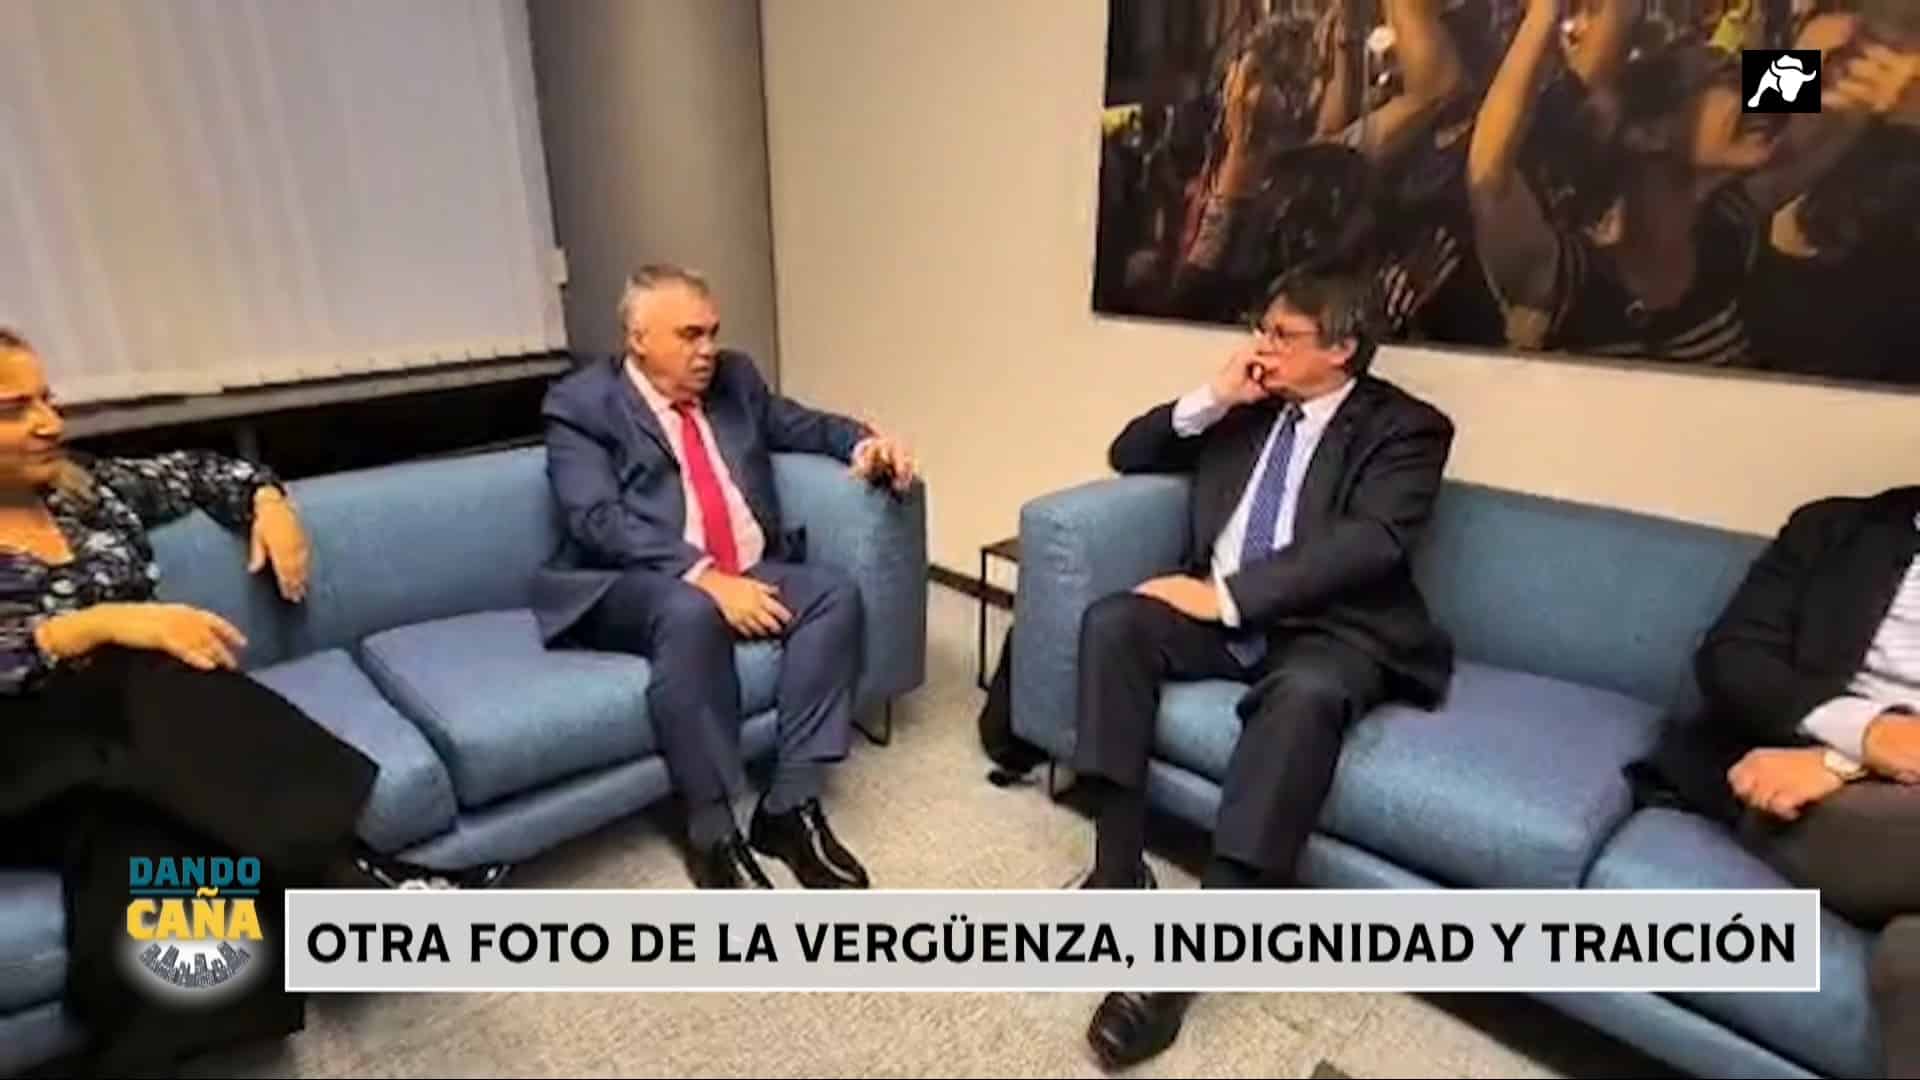 Santos Cerdán y Puigdemont con el cuadro del 1-O, pocas fotos reúnen tanta indignidad y traición